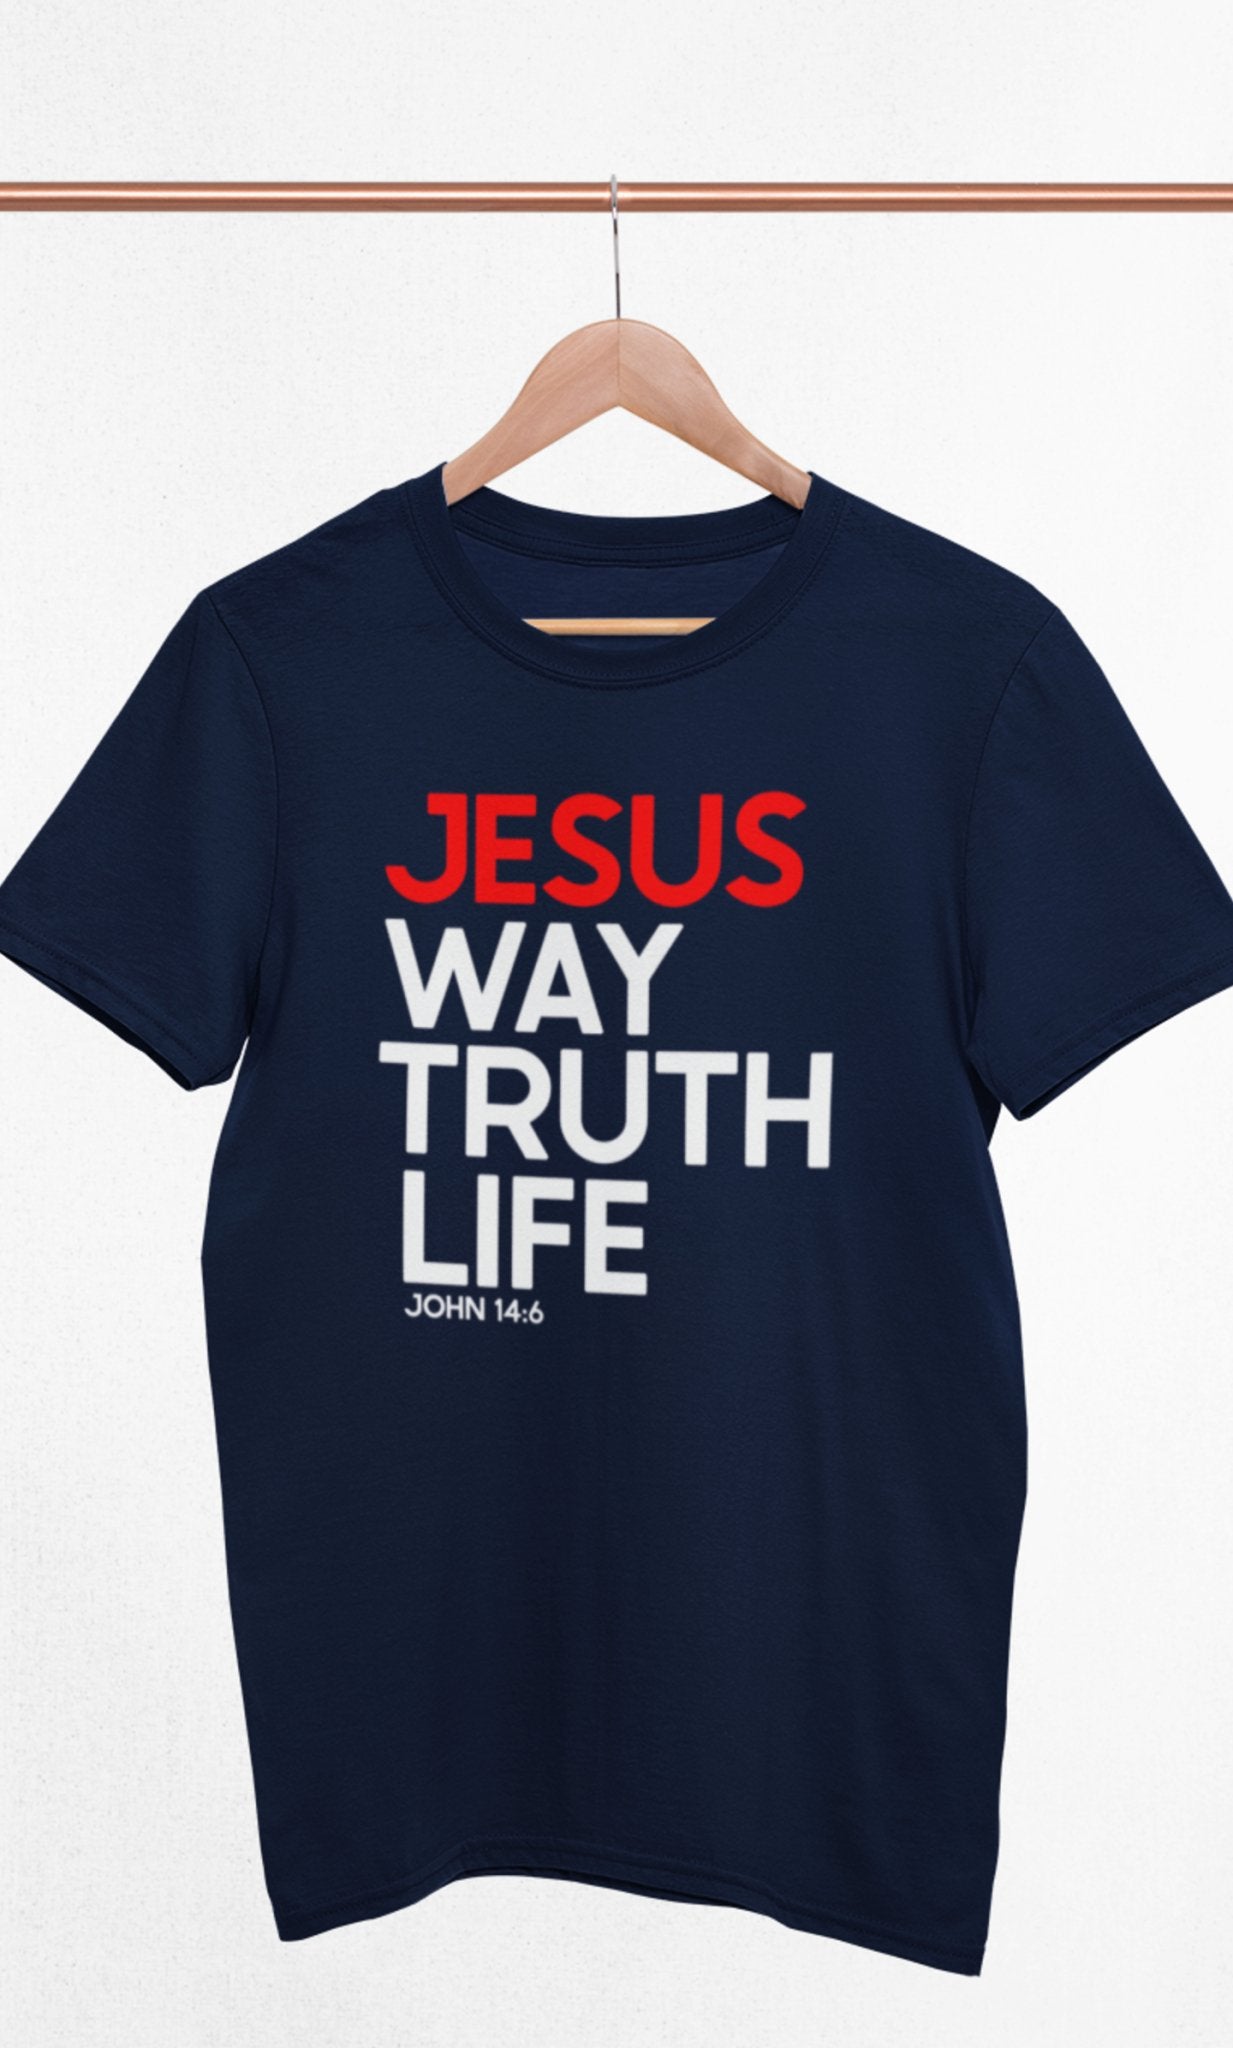 Way Truth Life - Men's T - Trini-T Ministries